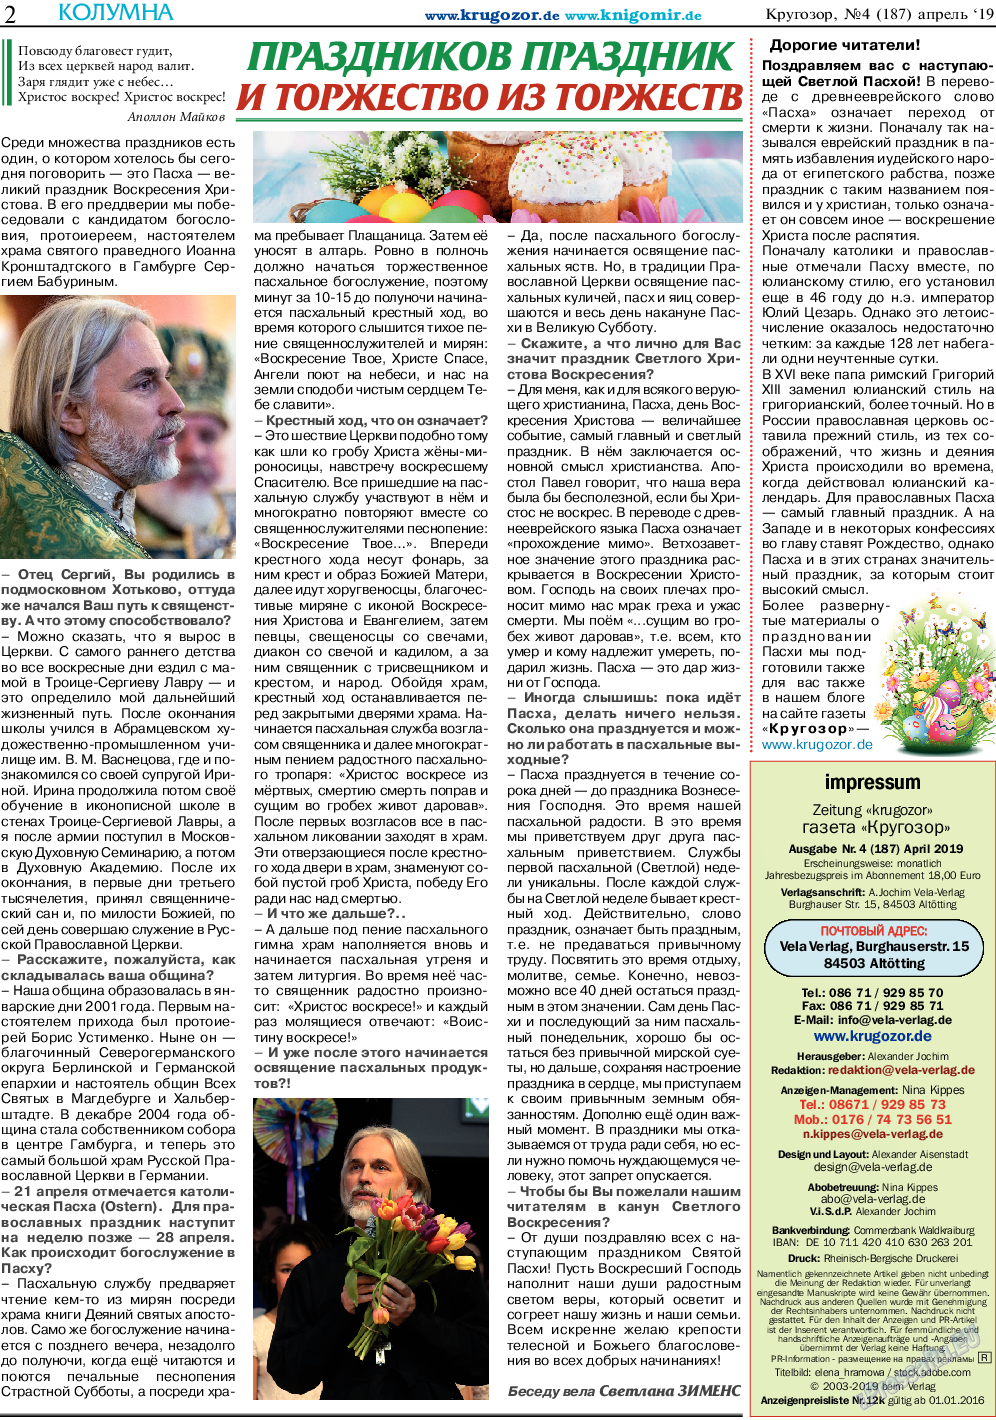 Кругозор (газета). 2019 год, номер 4, стр. 2